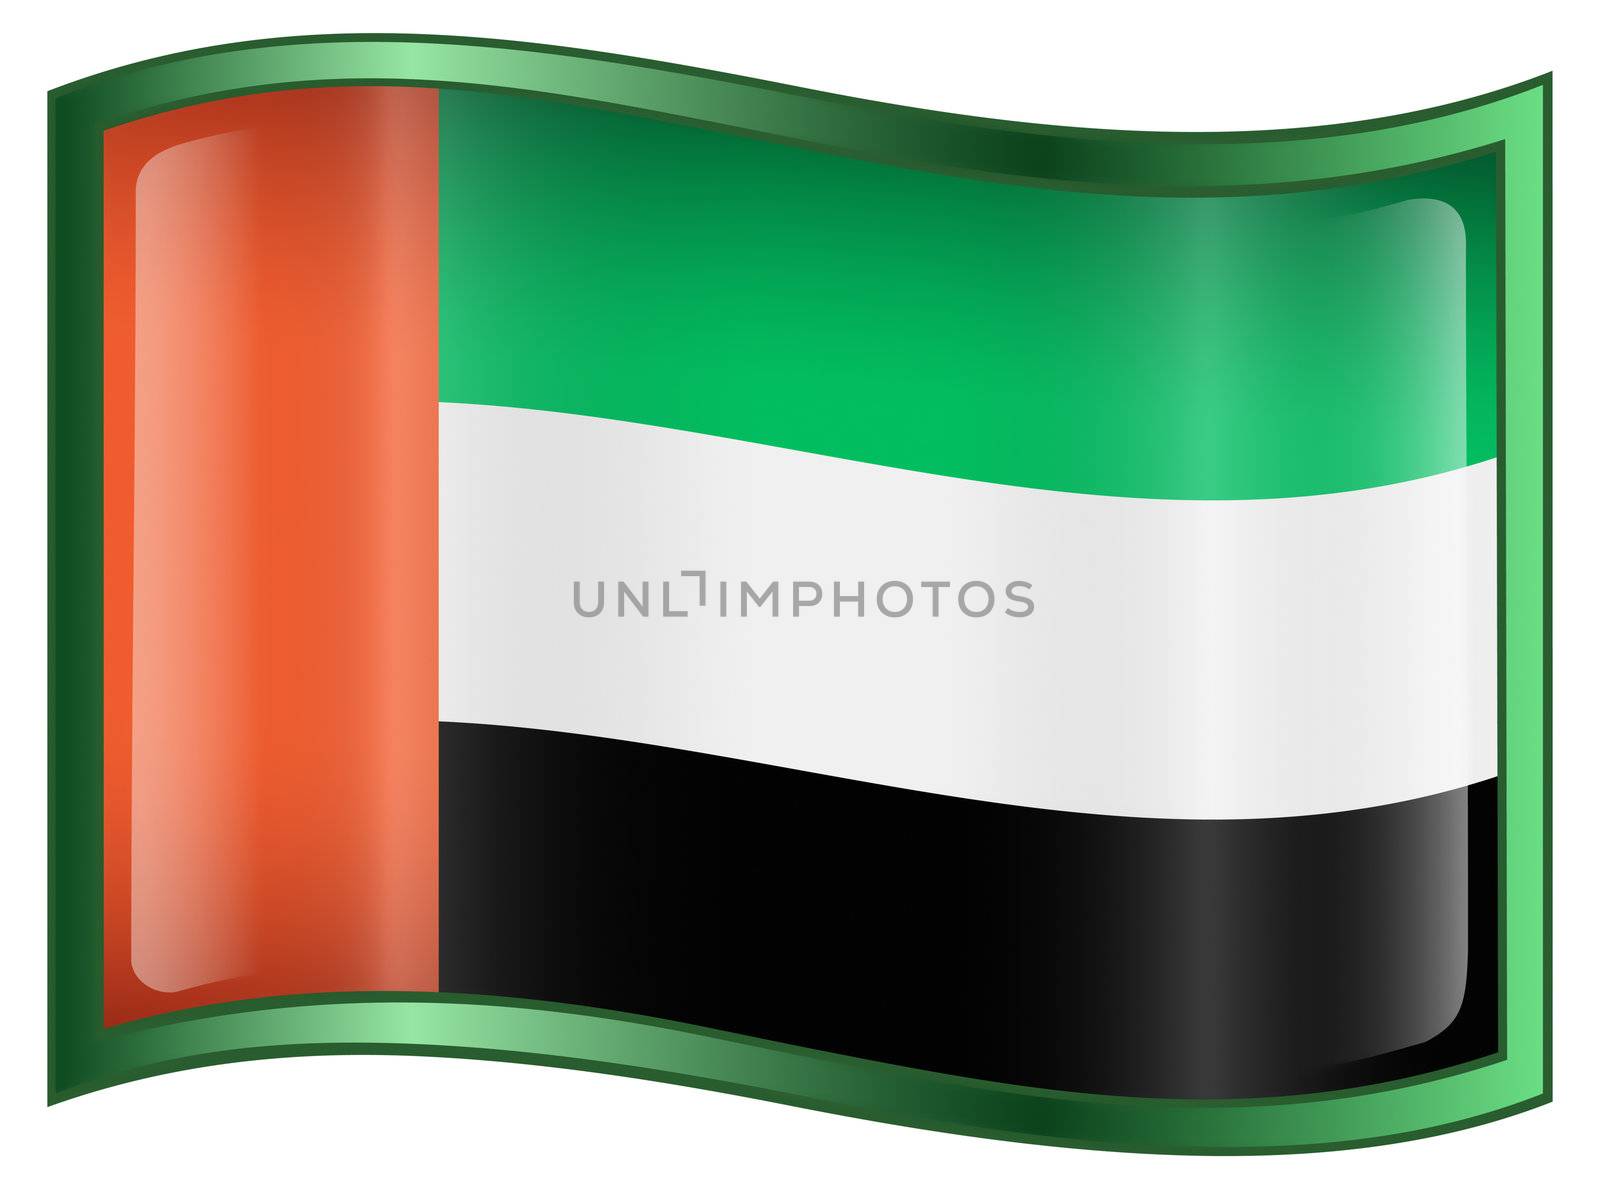 United Arab Emirates Flag Icon, isolated on white background.